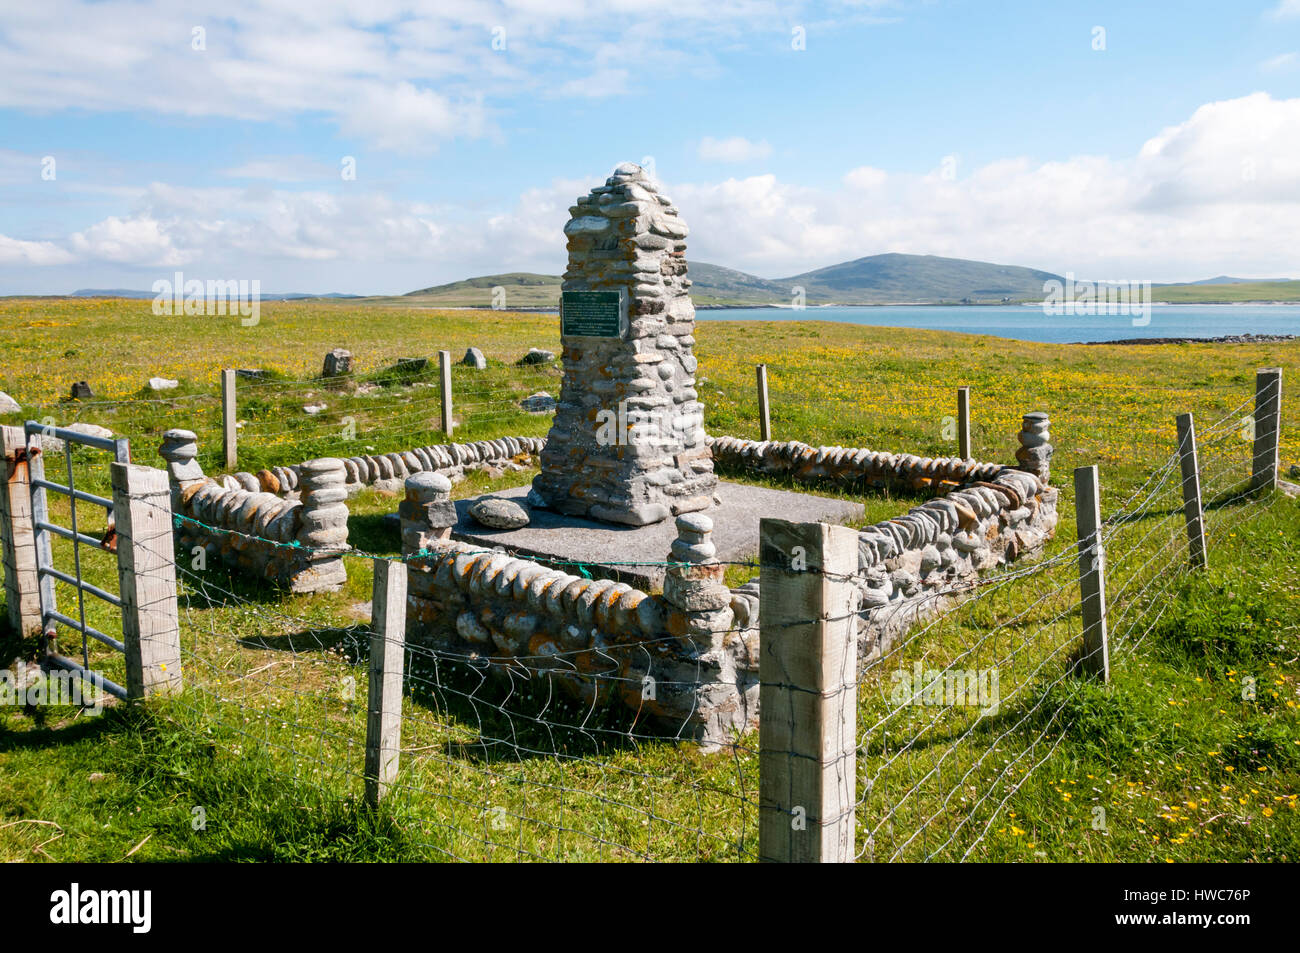 Cairn Marken Geburtsort von Angus MacAskill, die riesigen Nova Scotia auf der Insel Berneray, North Uist in den äußeren Hebriden.  DETAILS IN DER BESCHREIBUNG. Stockfoto